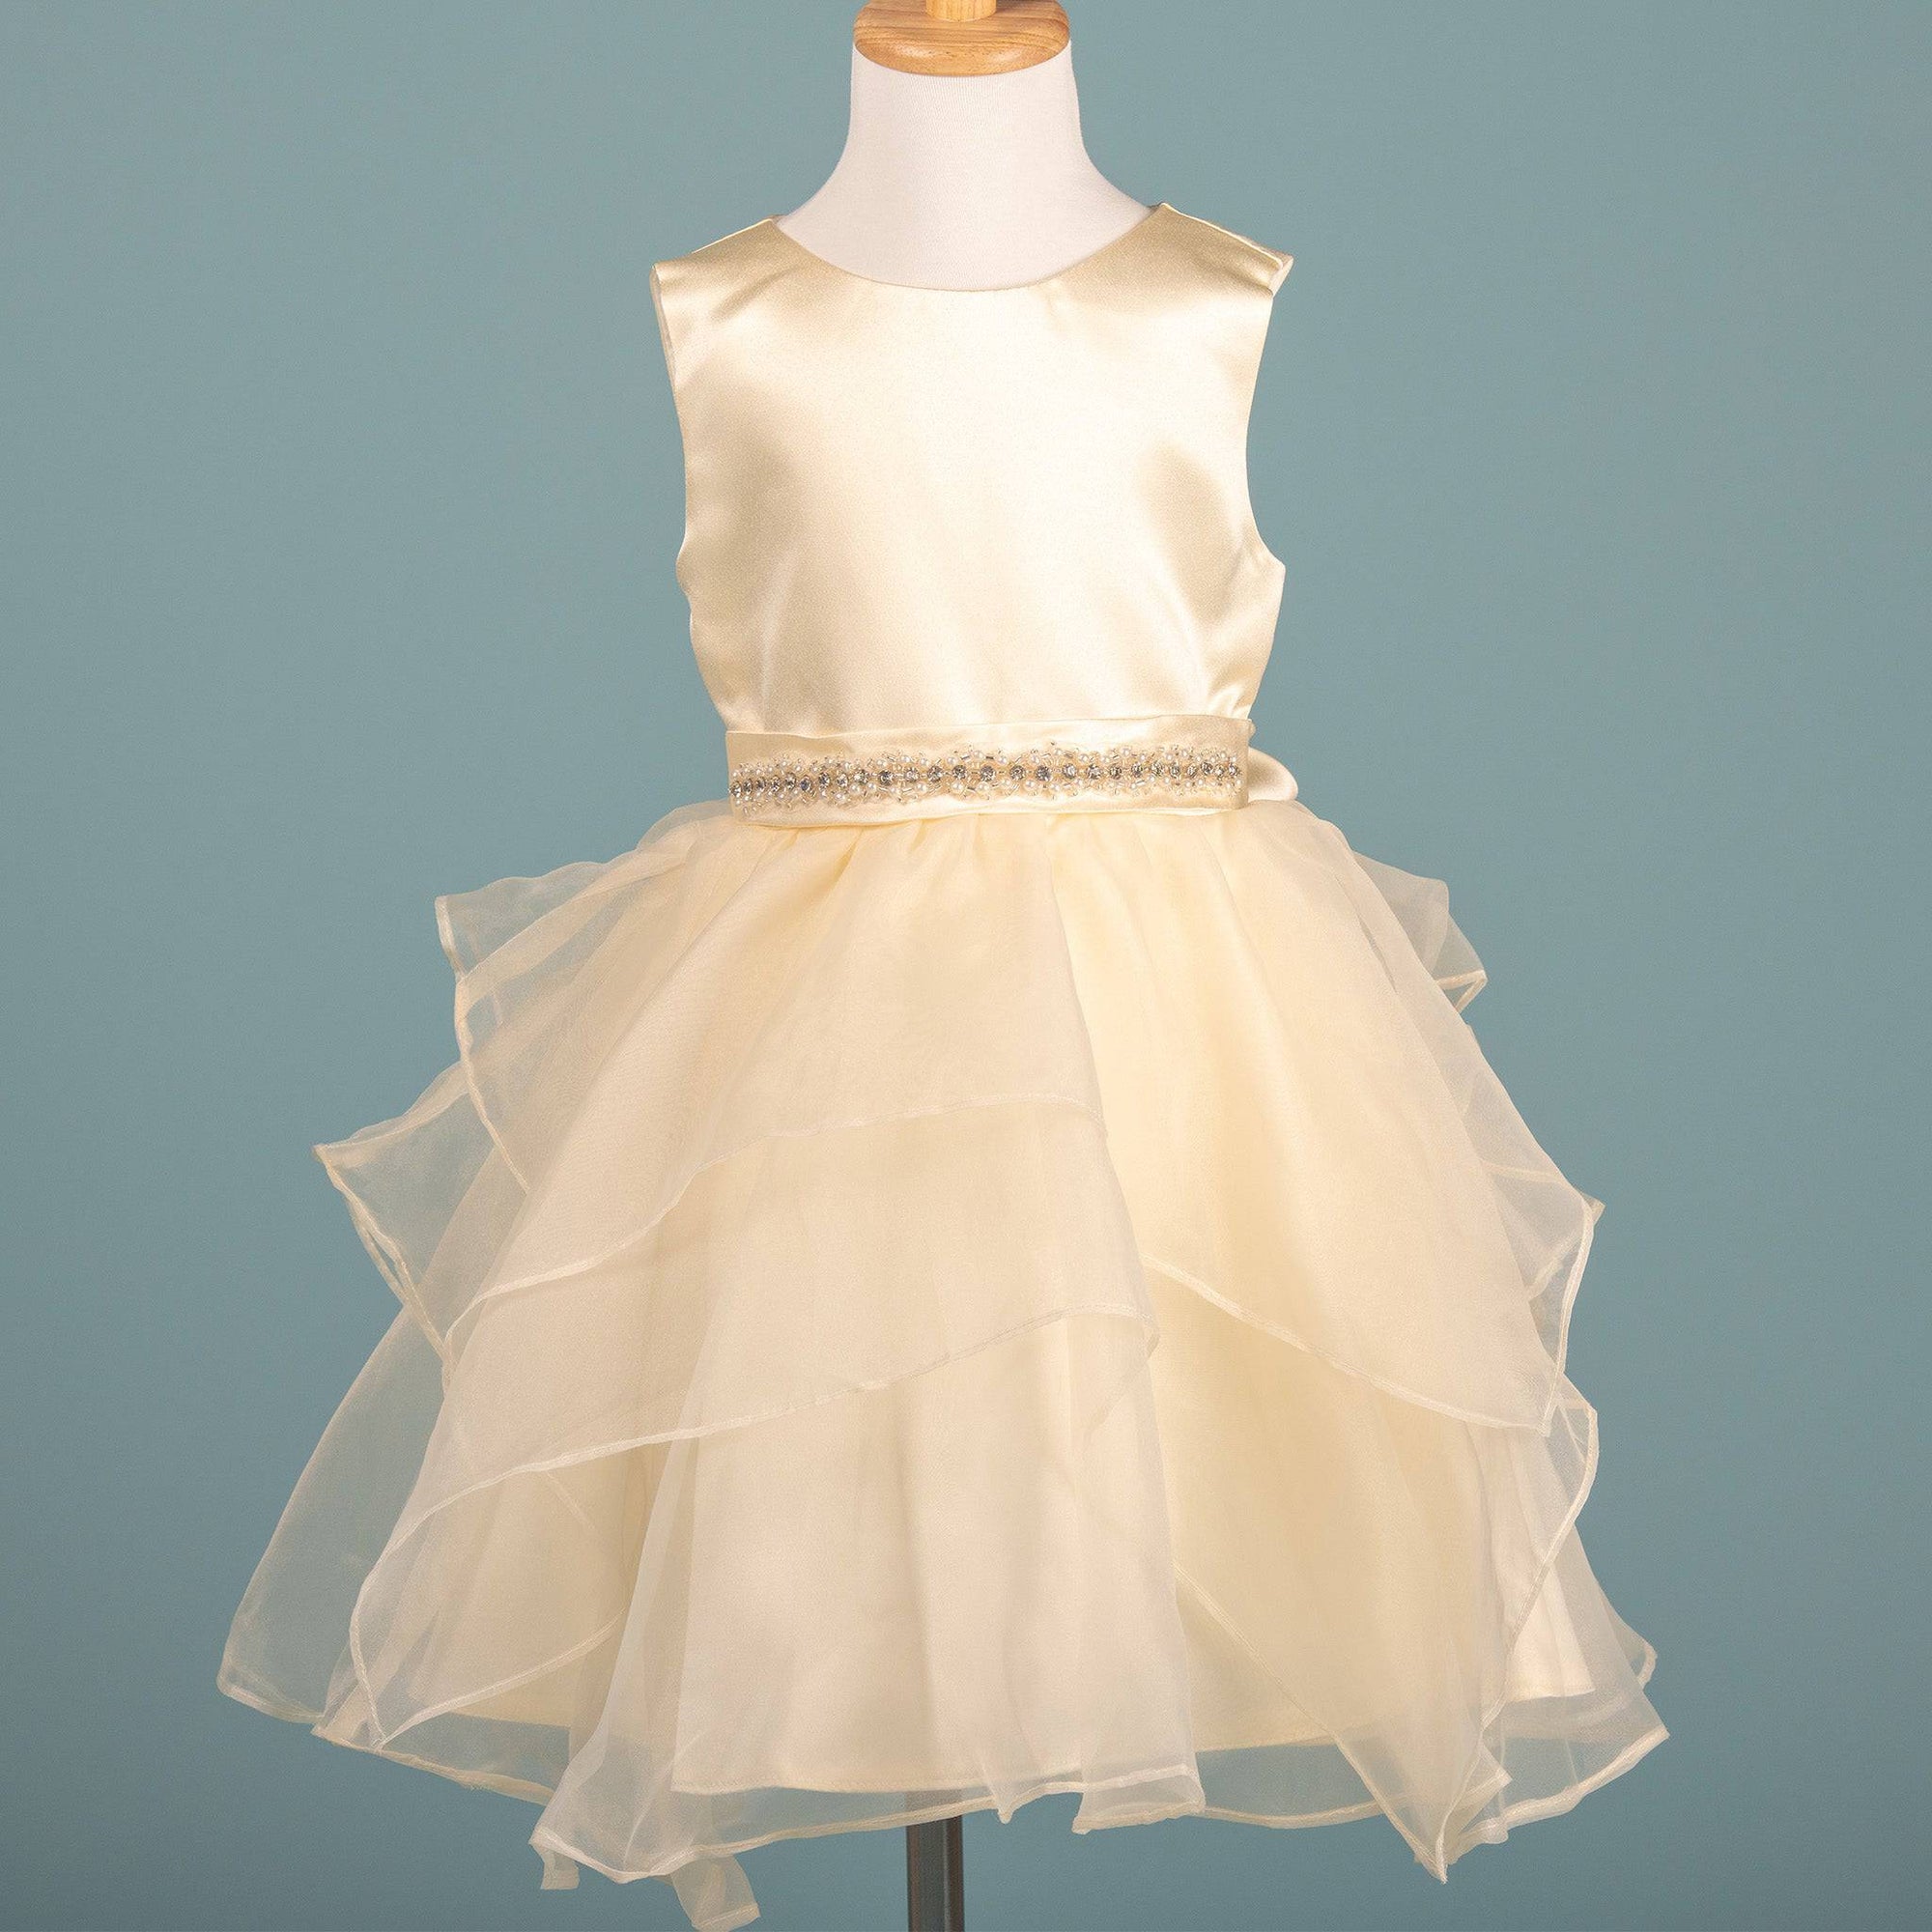 Hosting Girl Dress by RN - LITTLE BEDOUIN - baby dress فستان اطفال